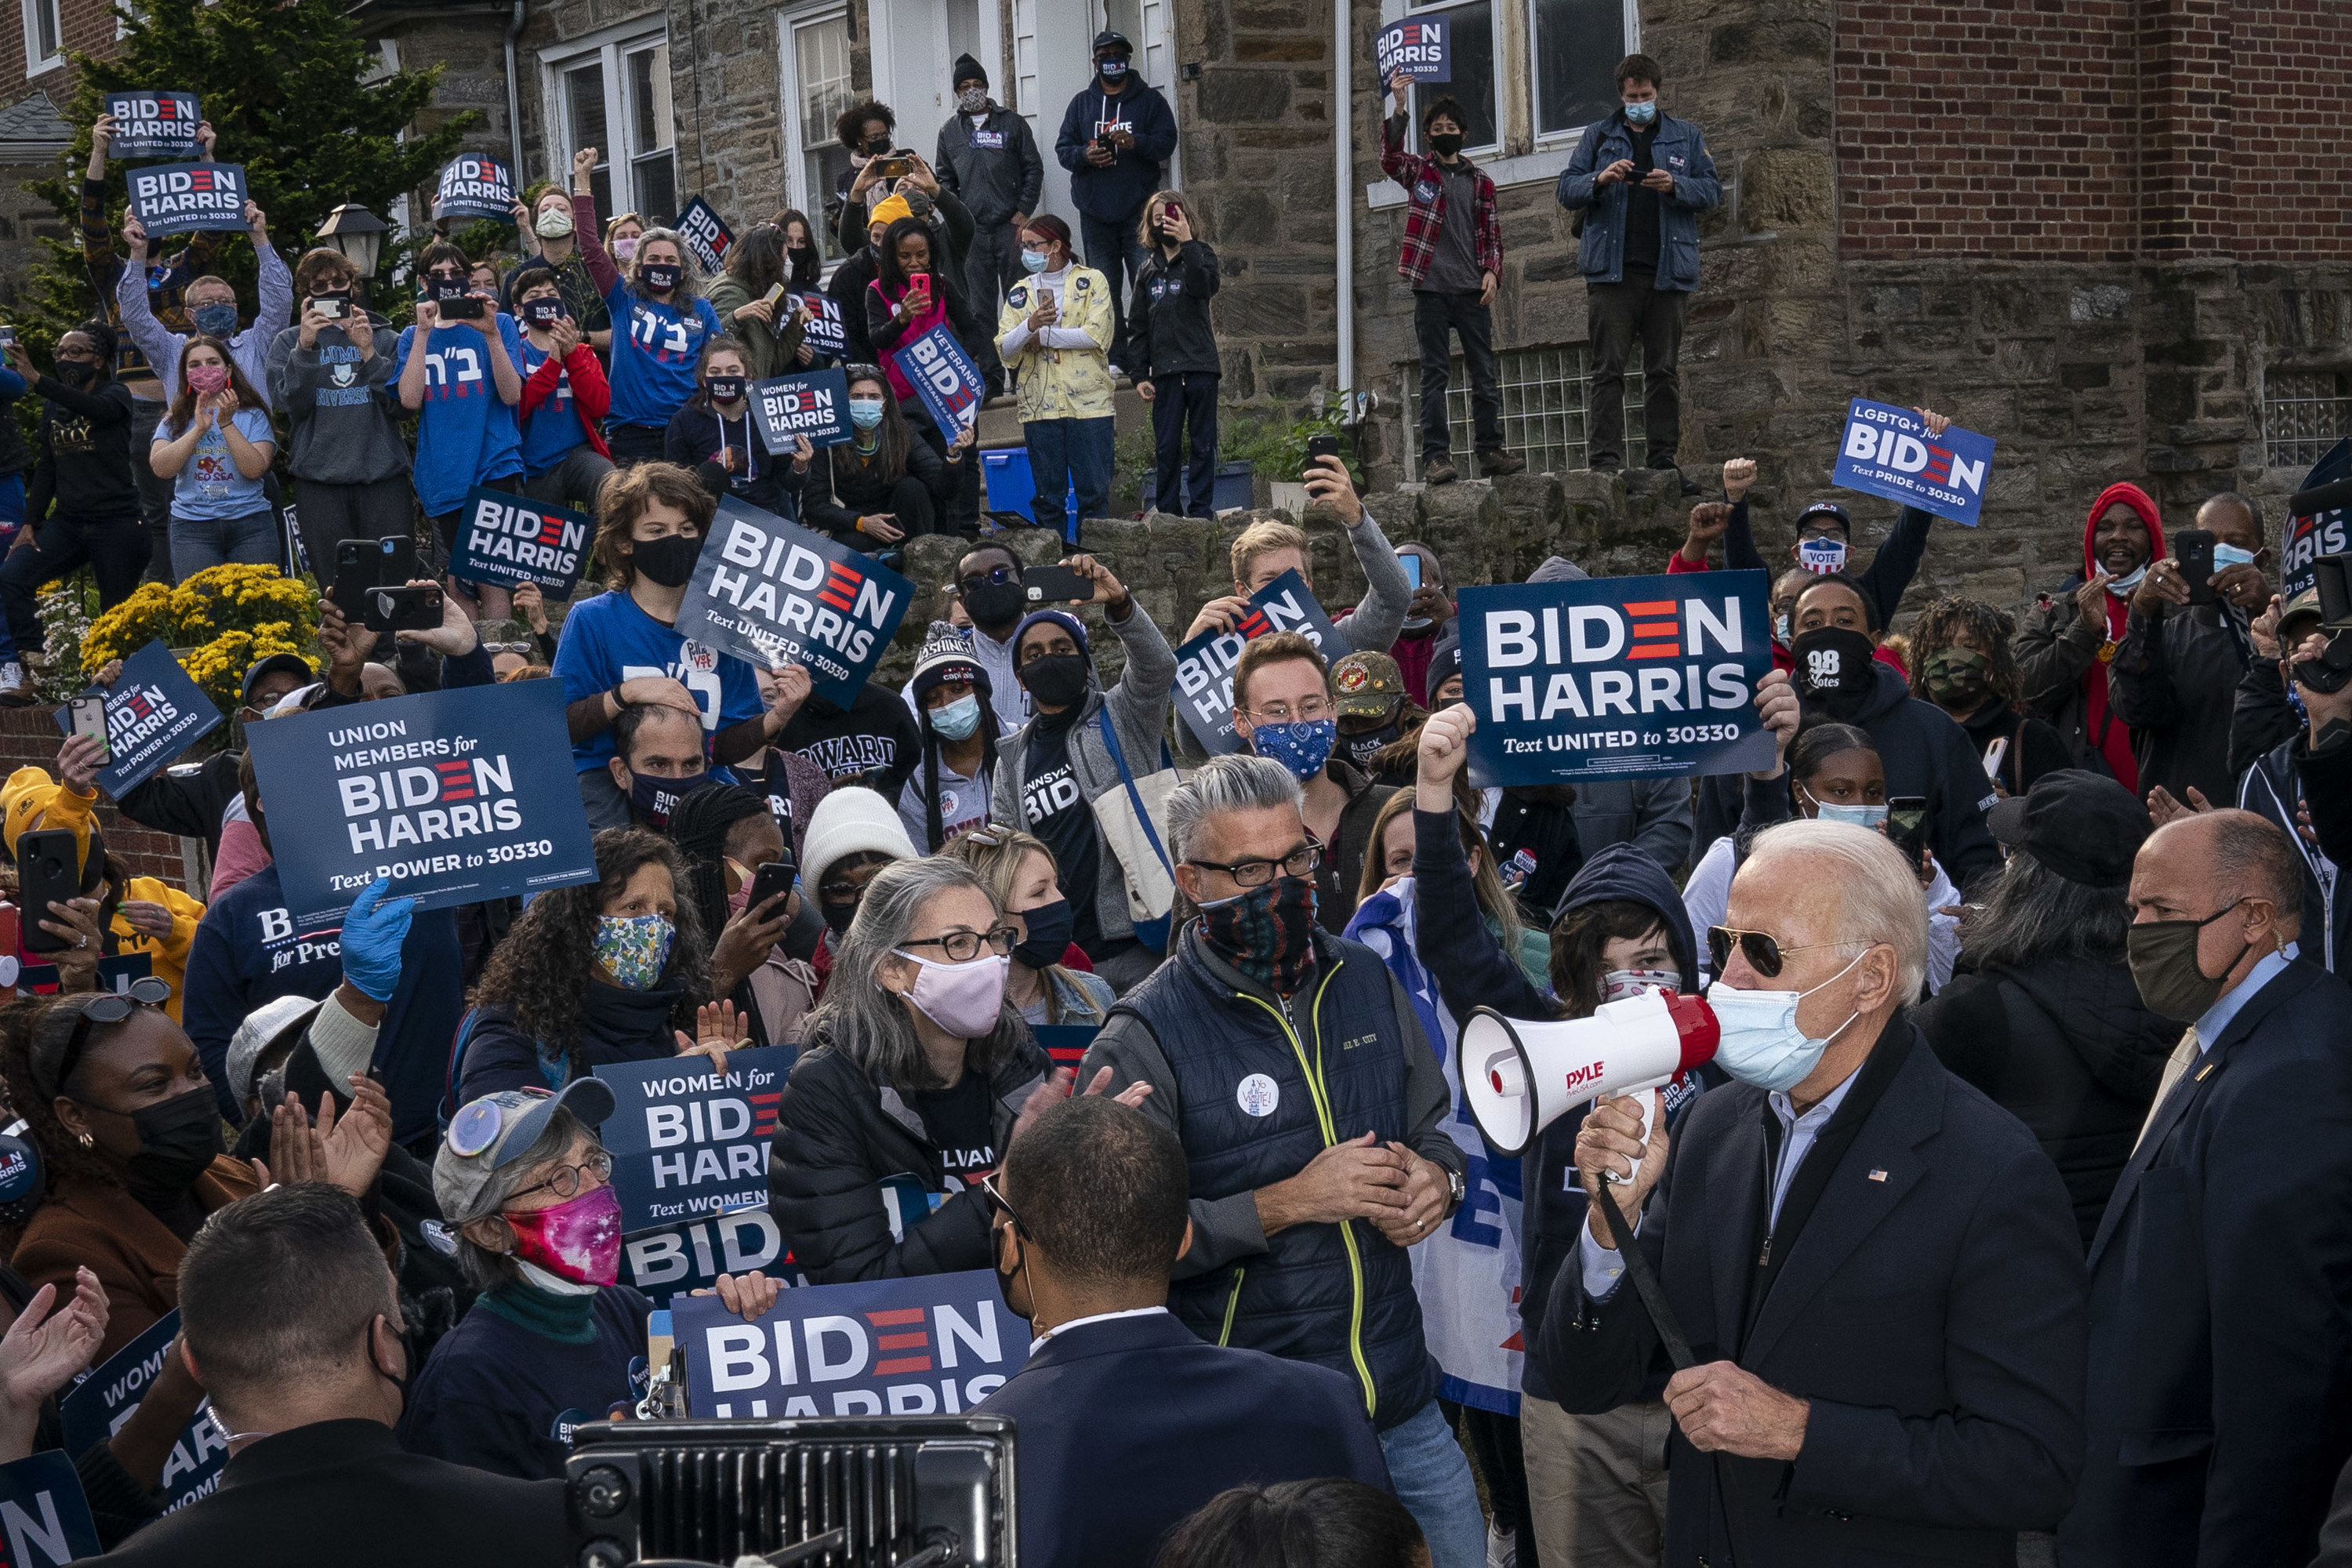 Joe Biden discursando em um megafone em frente à uma multidão de apoiadores.